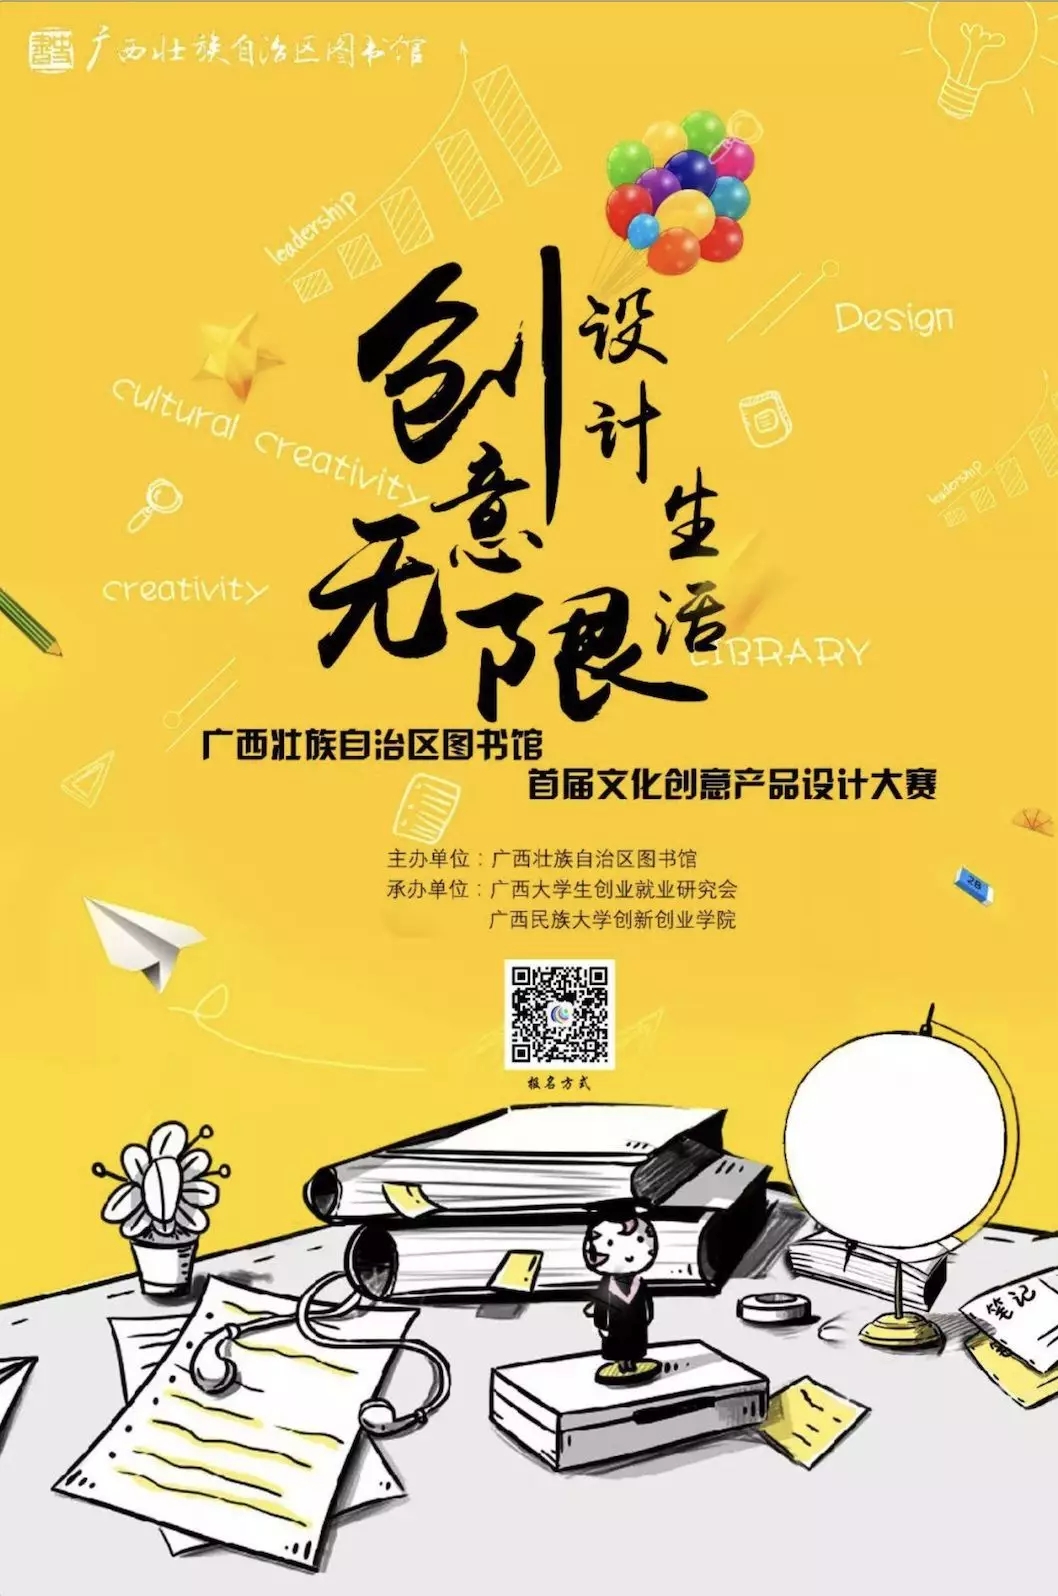 广西壮族自治区图书馆首届文化创意产品设计大赛.webp.jpg